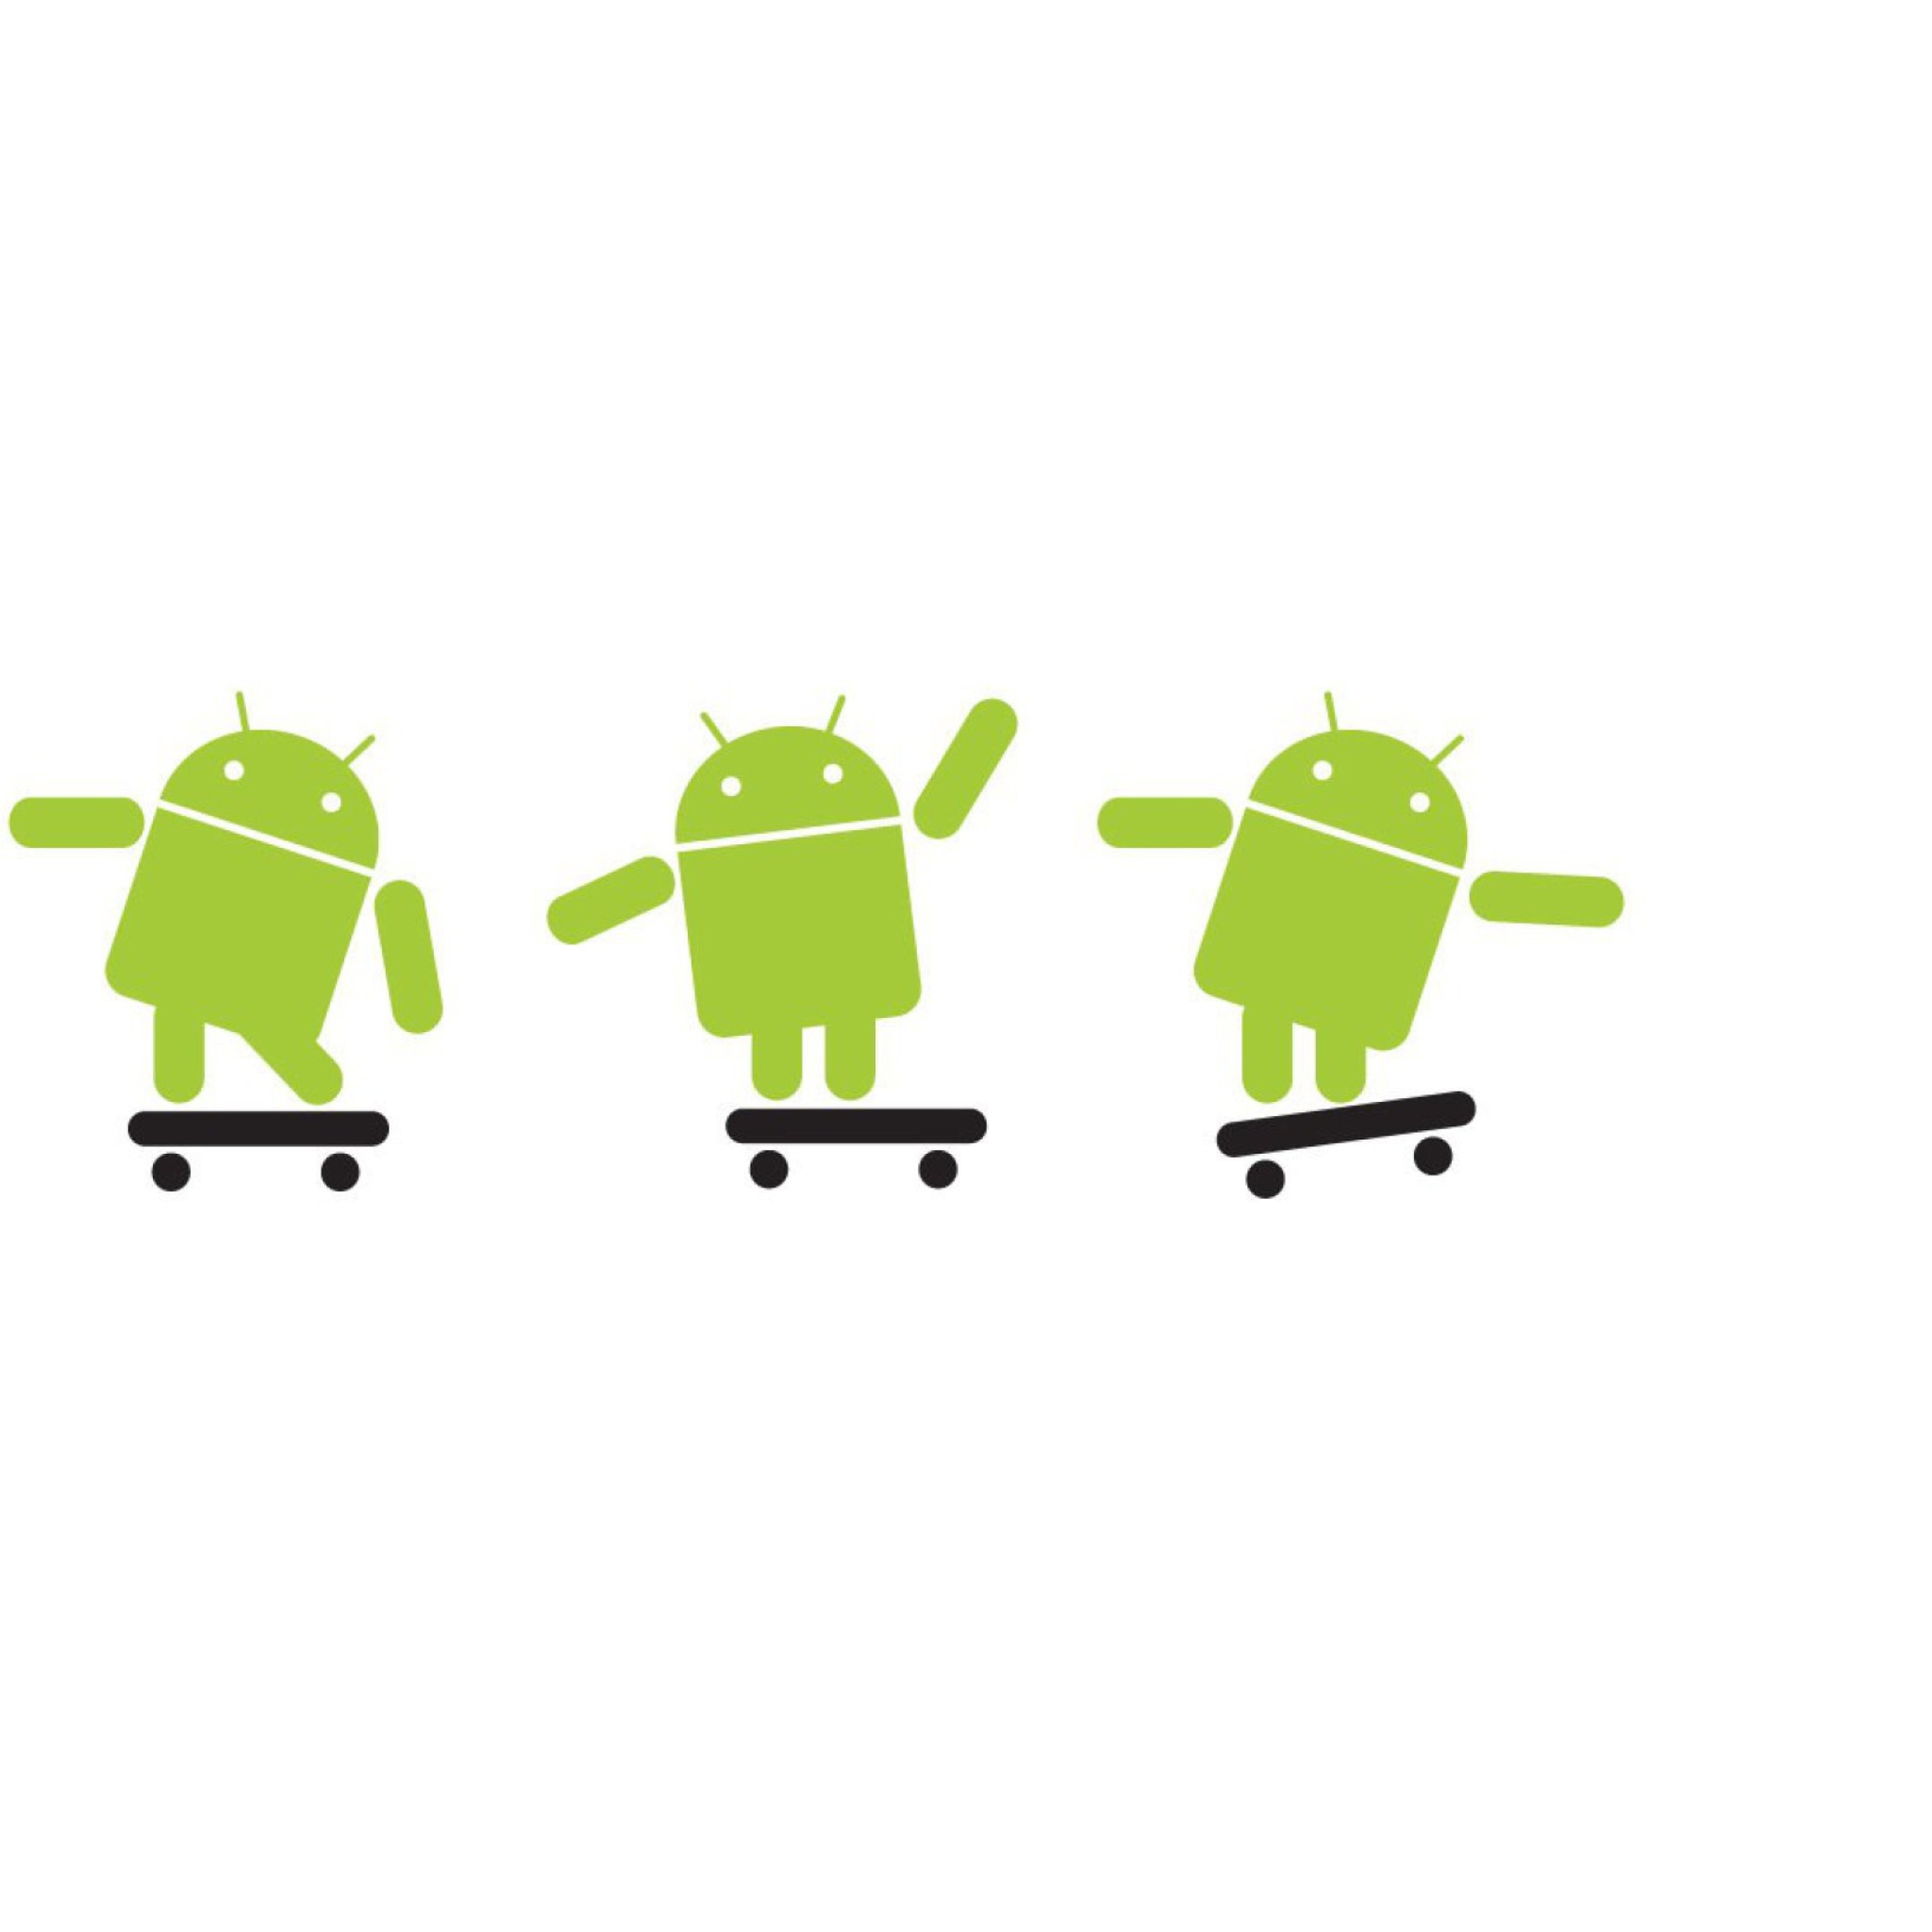 Продвинутый андроид. Андроид. Логотип андроид. Обои на андроид. Логотип Android зеленый робот.